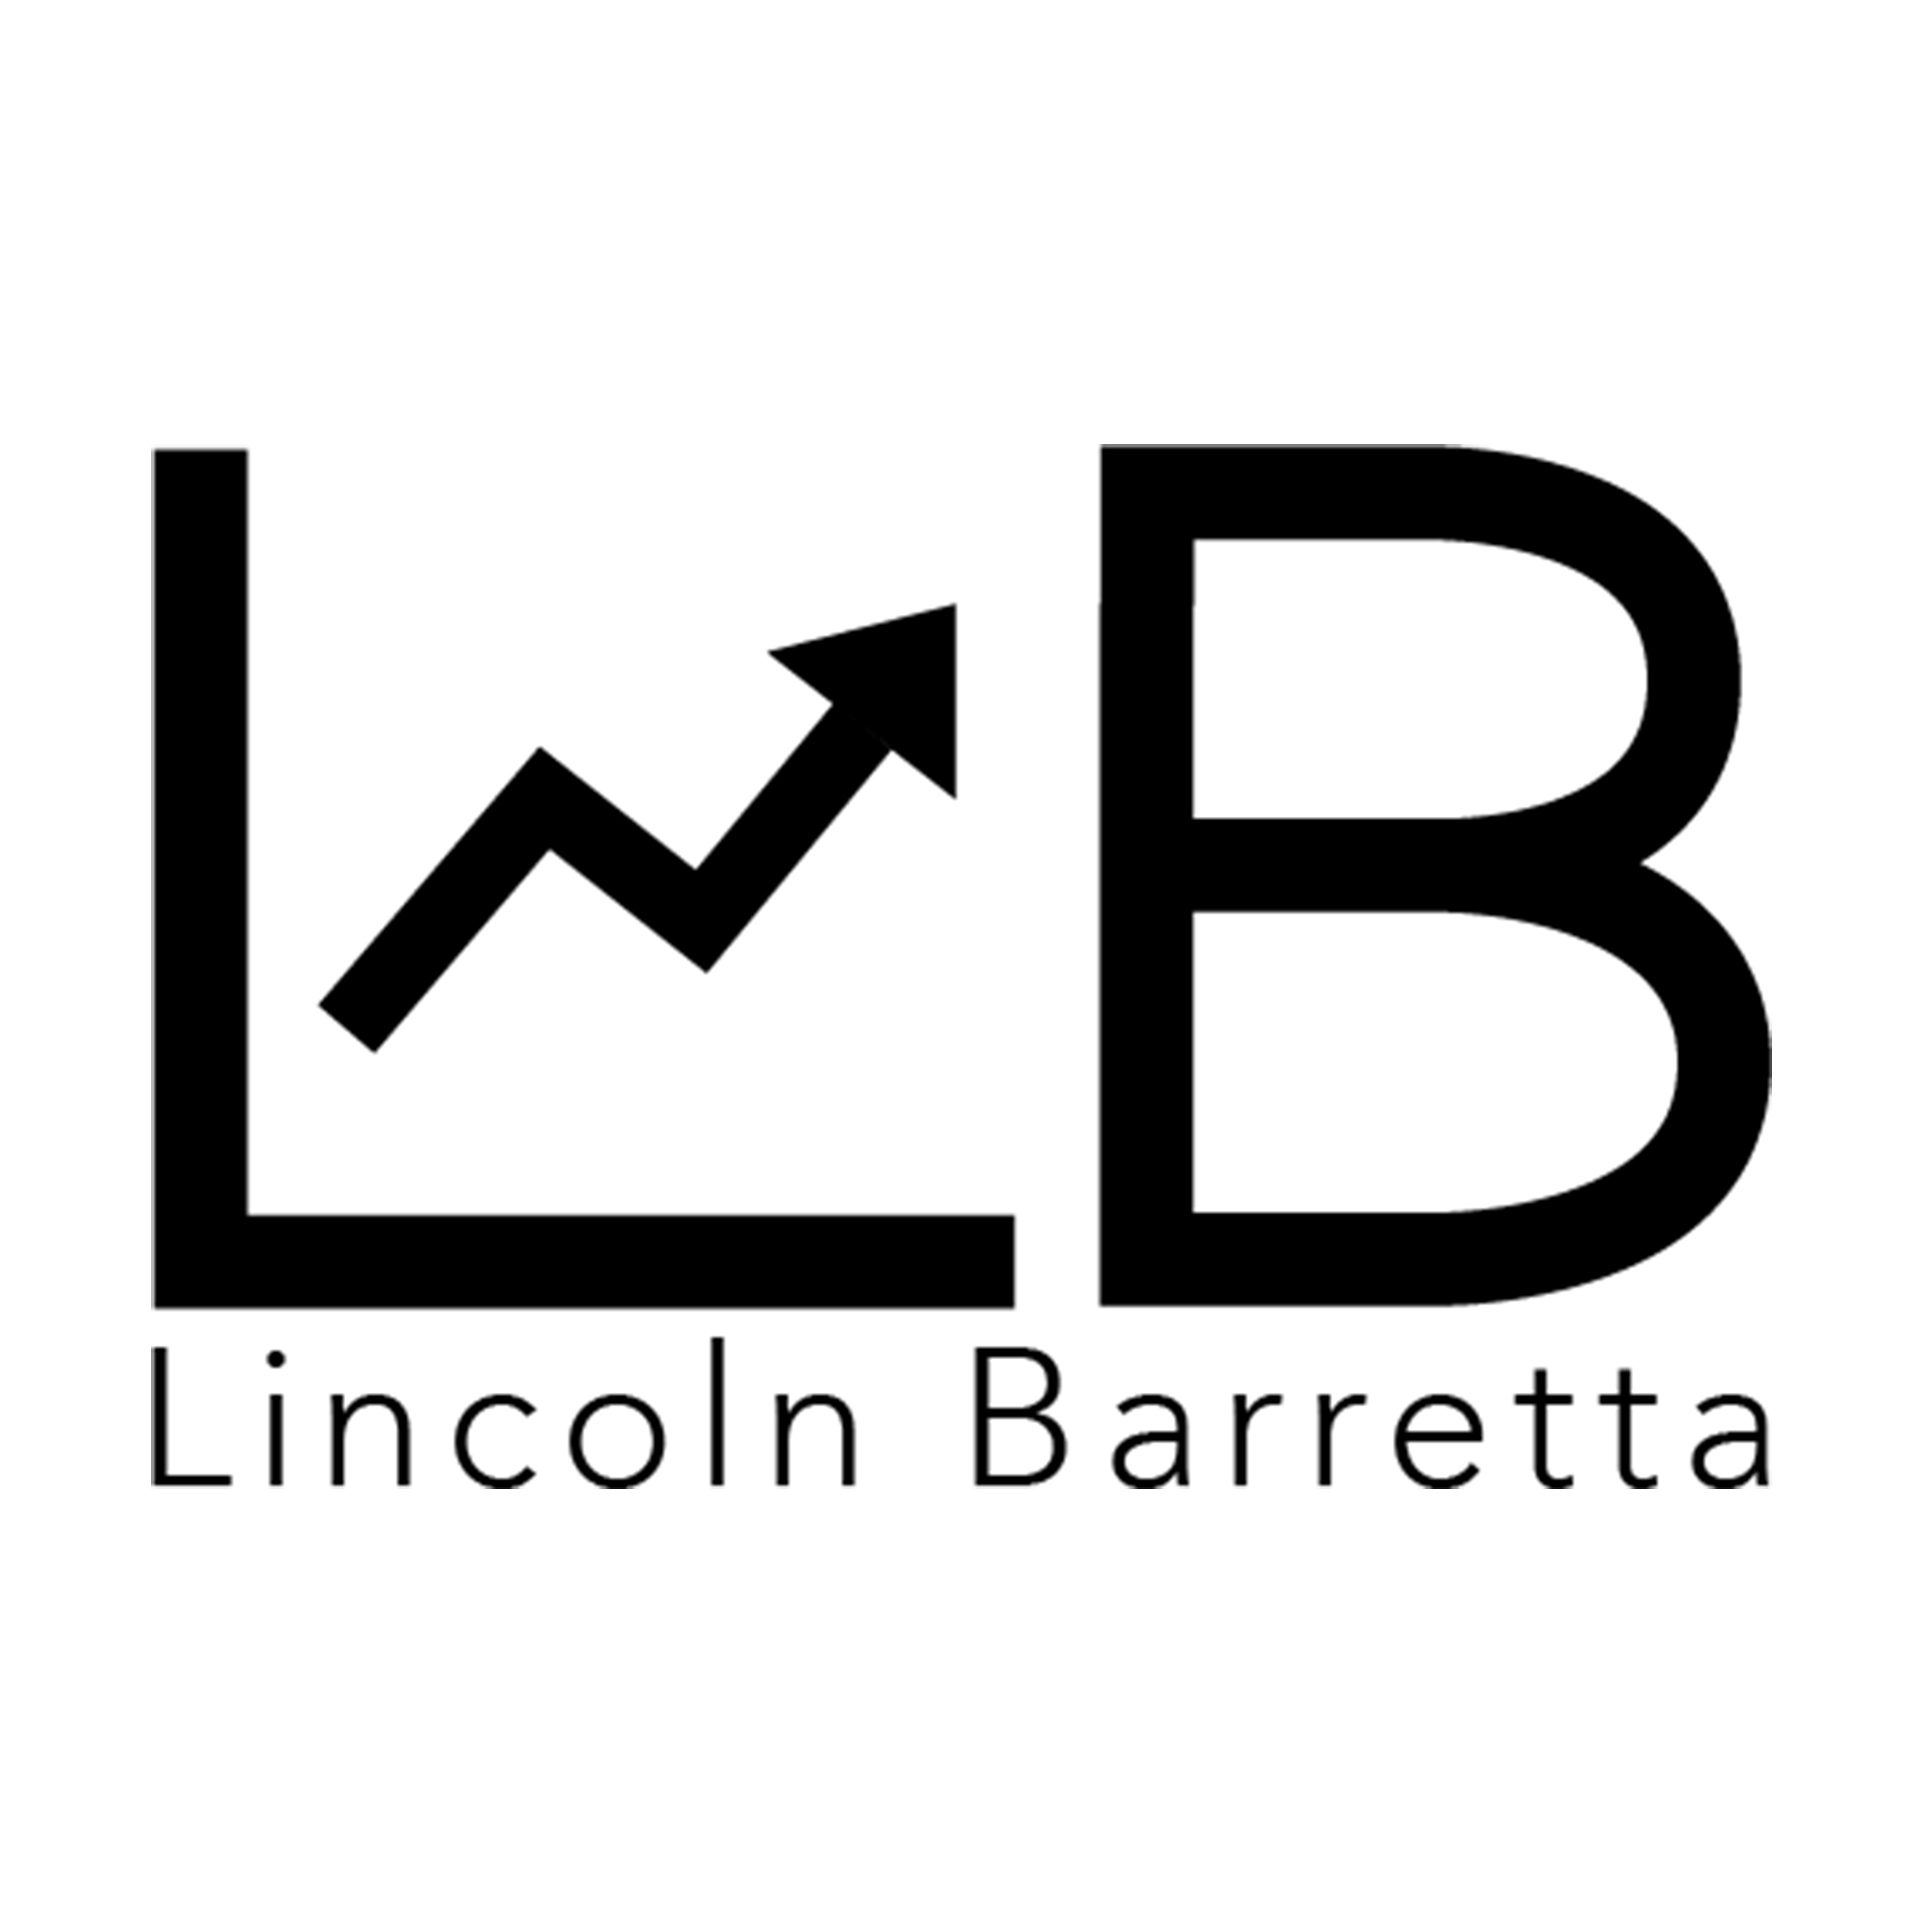 Lincoln Barretta Charter School Services